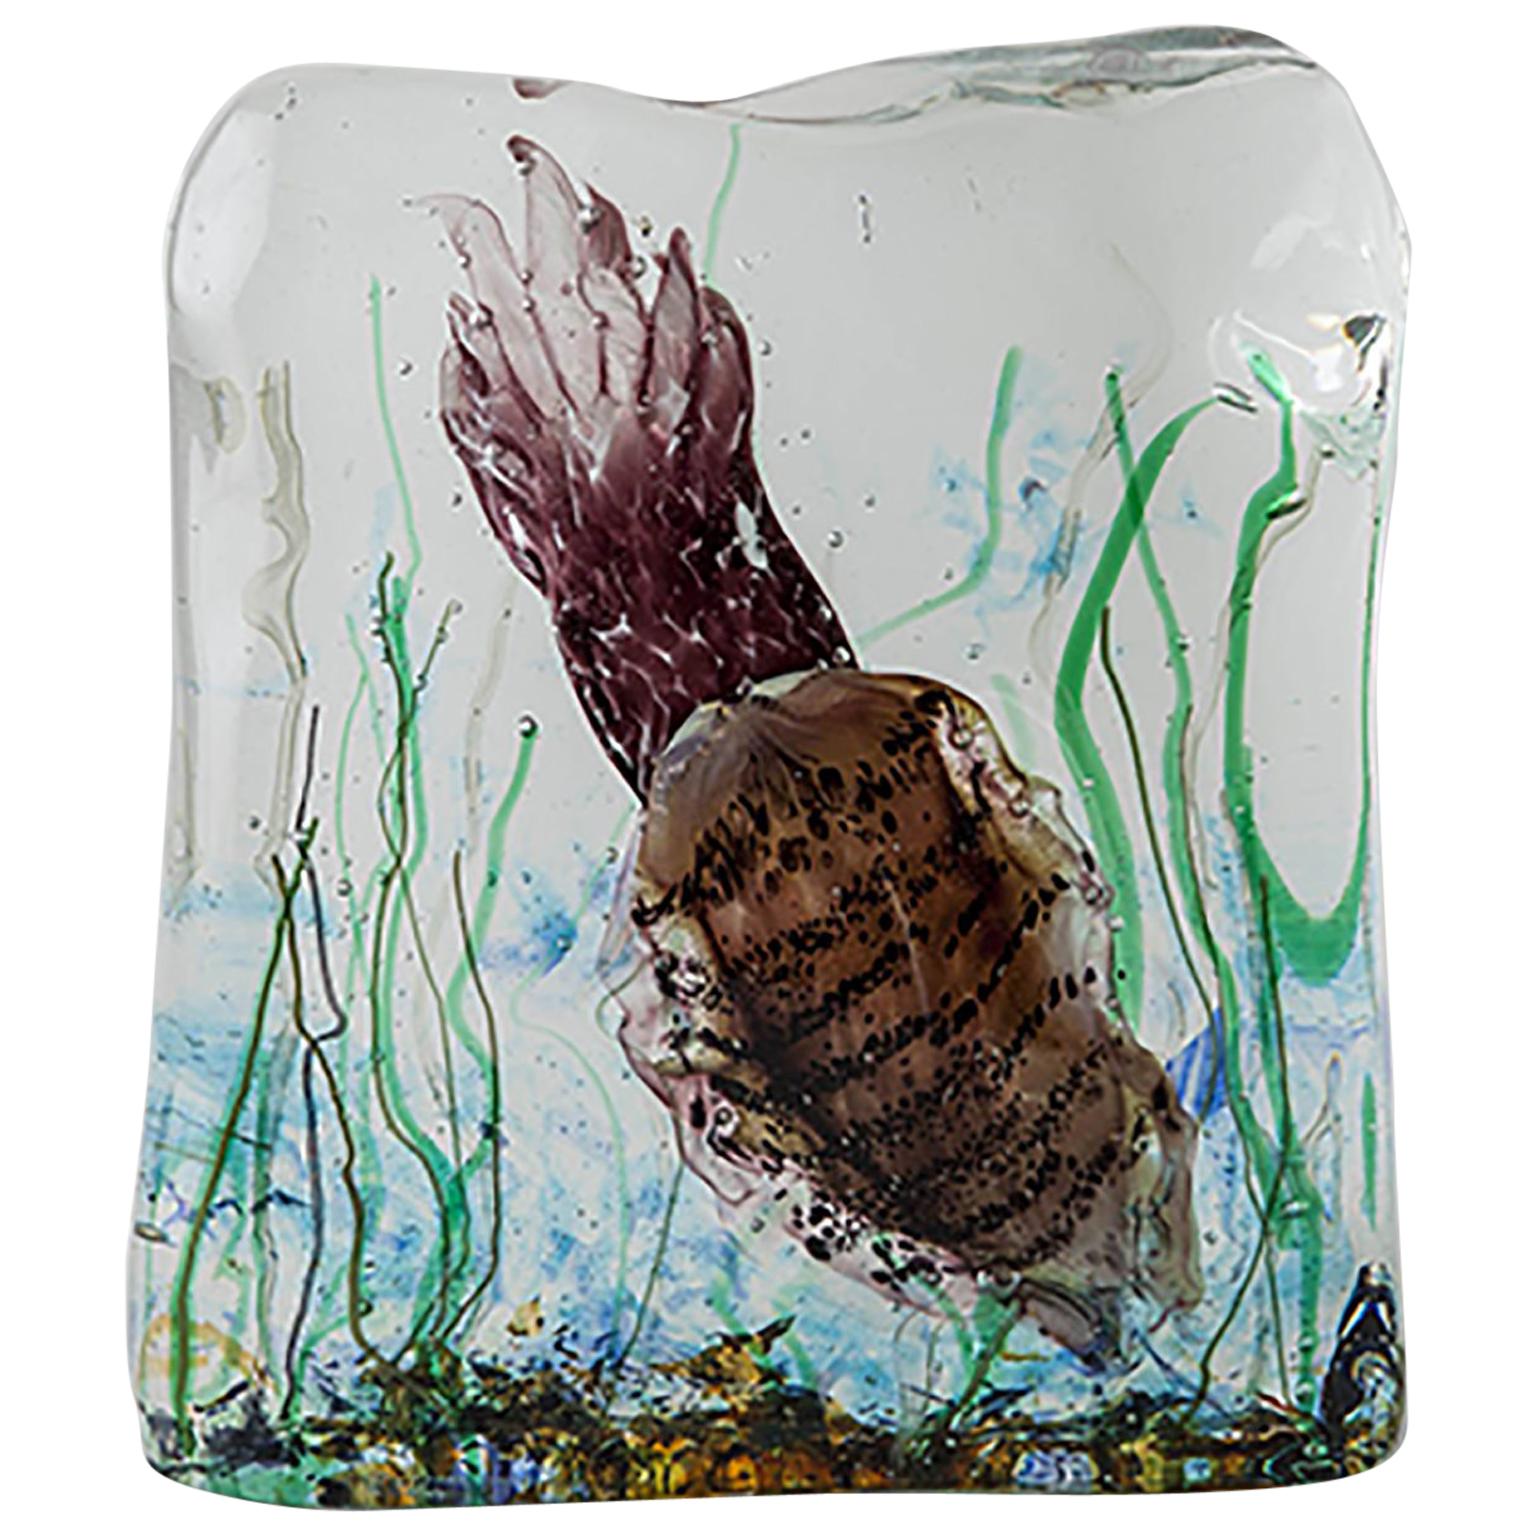 Artistic Handmade Aquarium Murano Glass by Roberto Beltrami